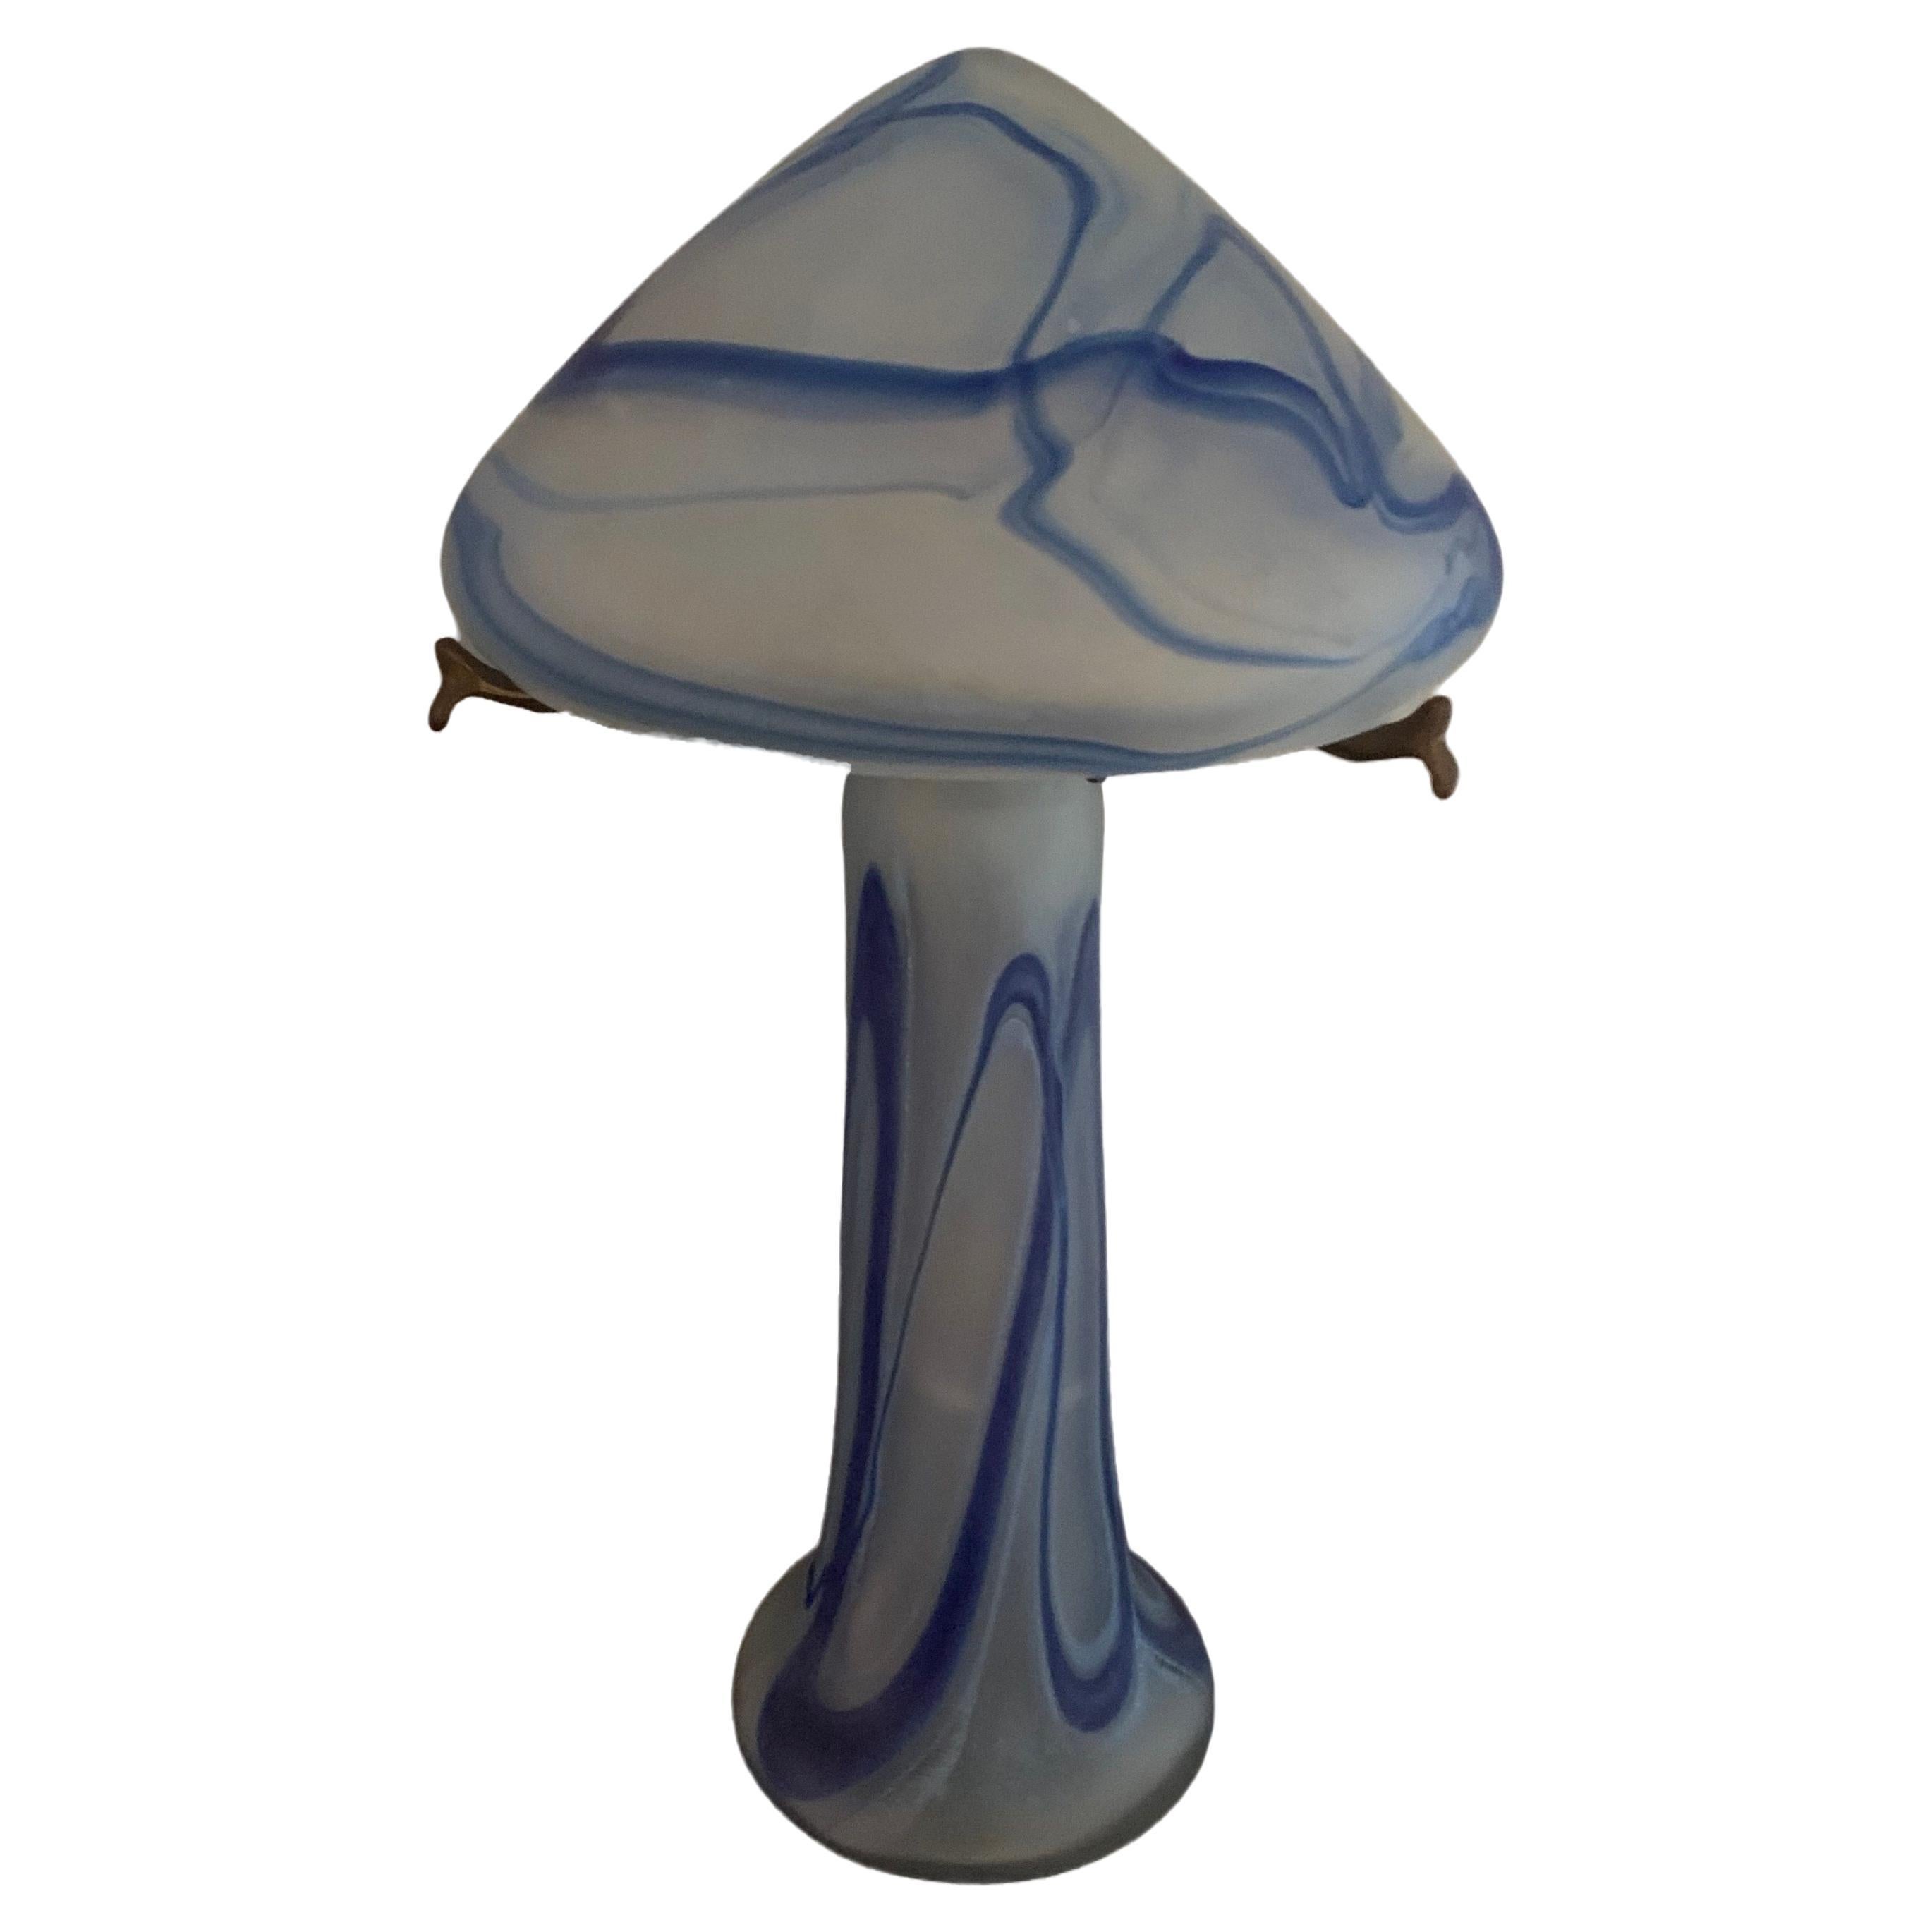 Exquisite Jugendstillampe, hergestellt in Frankreich. 

Traditionelle Pilzform mit einer spitzen Kuppel. Der Glassockel und die beiden Teile sind mit einem Messingstiel verbunden, der am Sockel befestigt ist. 

Blaues, weißes und klares Glas.